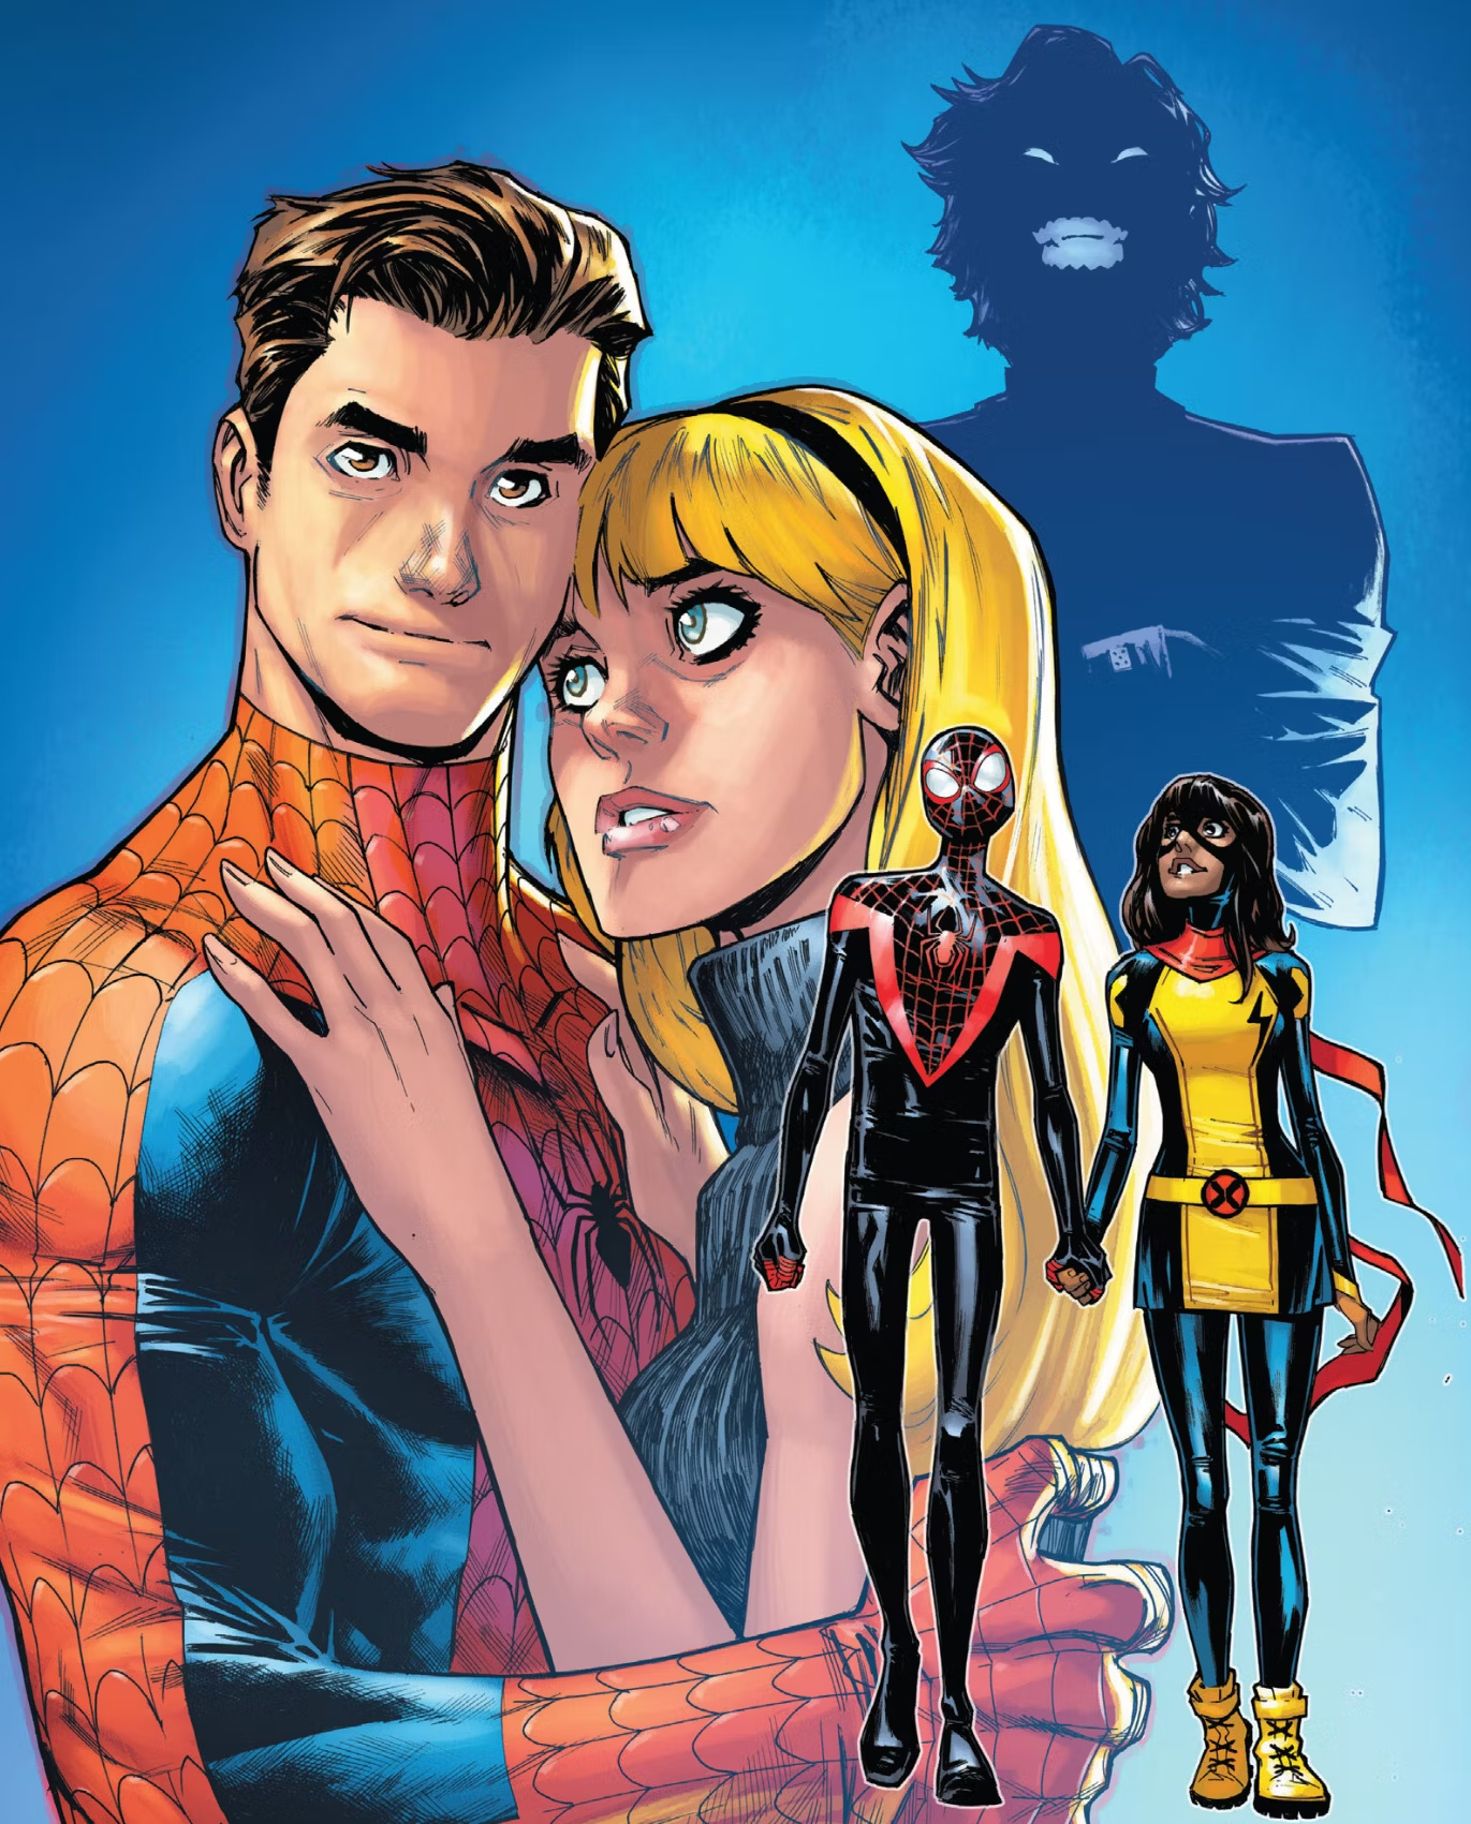 Imagem teaser no final de Spectacular Spider-Man #2, Peter segurando Gwen Stacy, Miles segurando a mão de Kamala Khan.